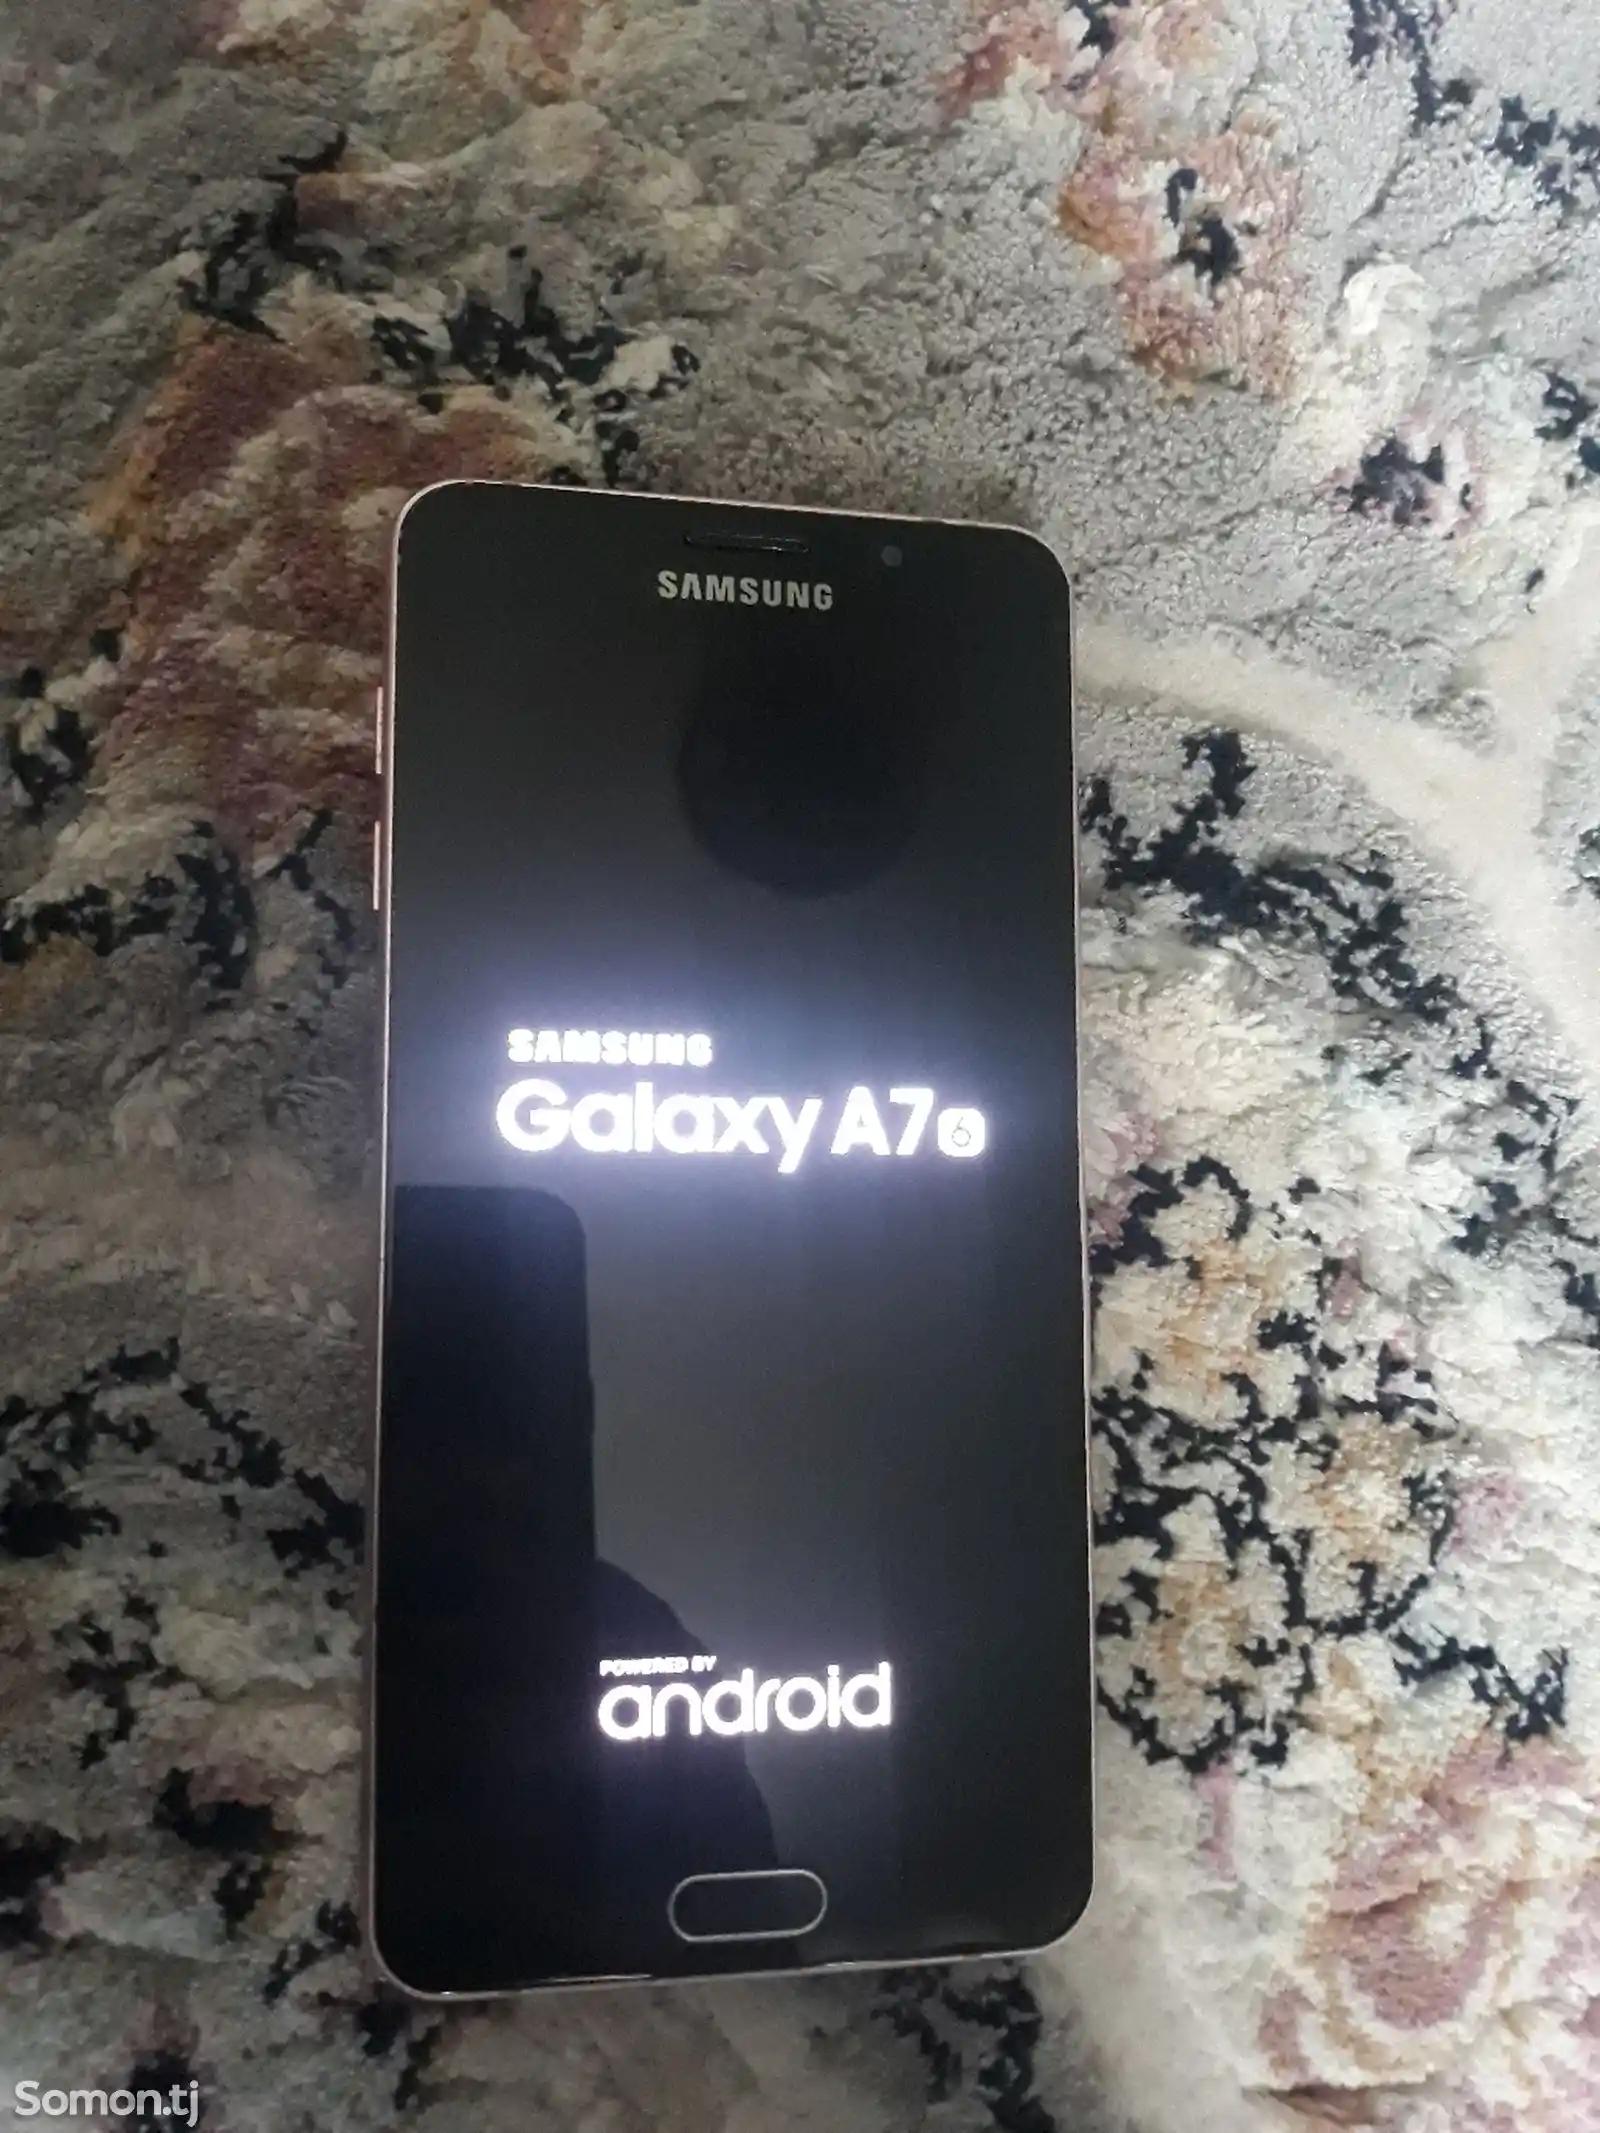 Samsung Galaxy A7, 2016-2